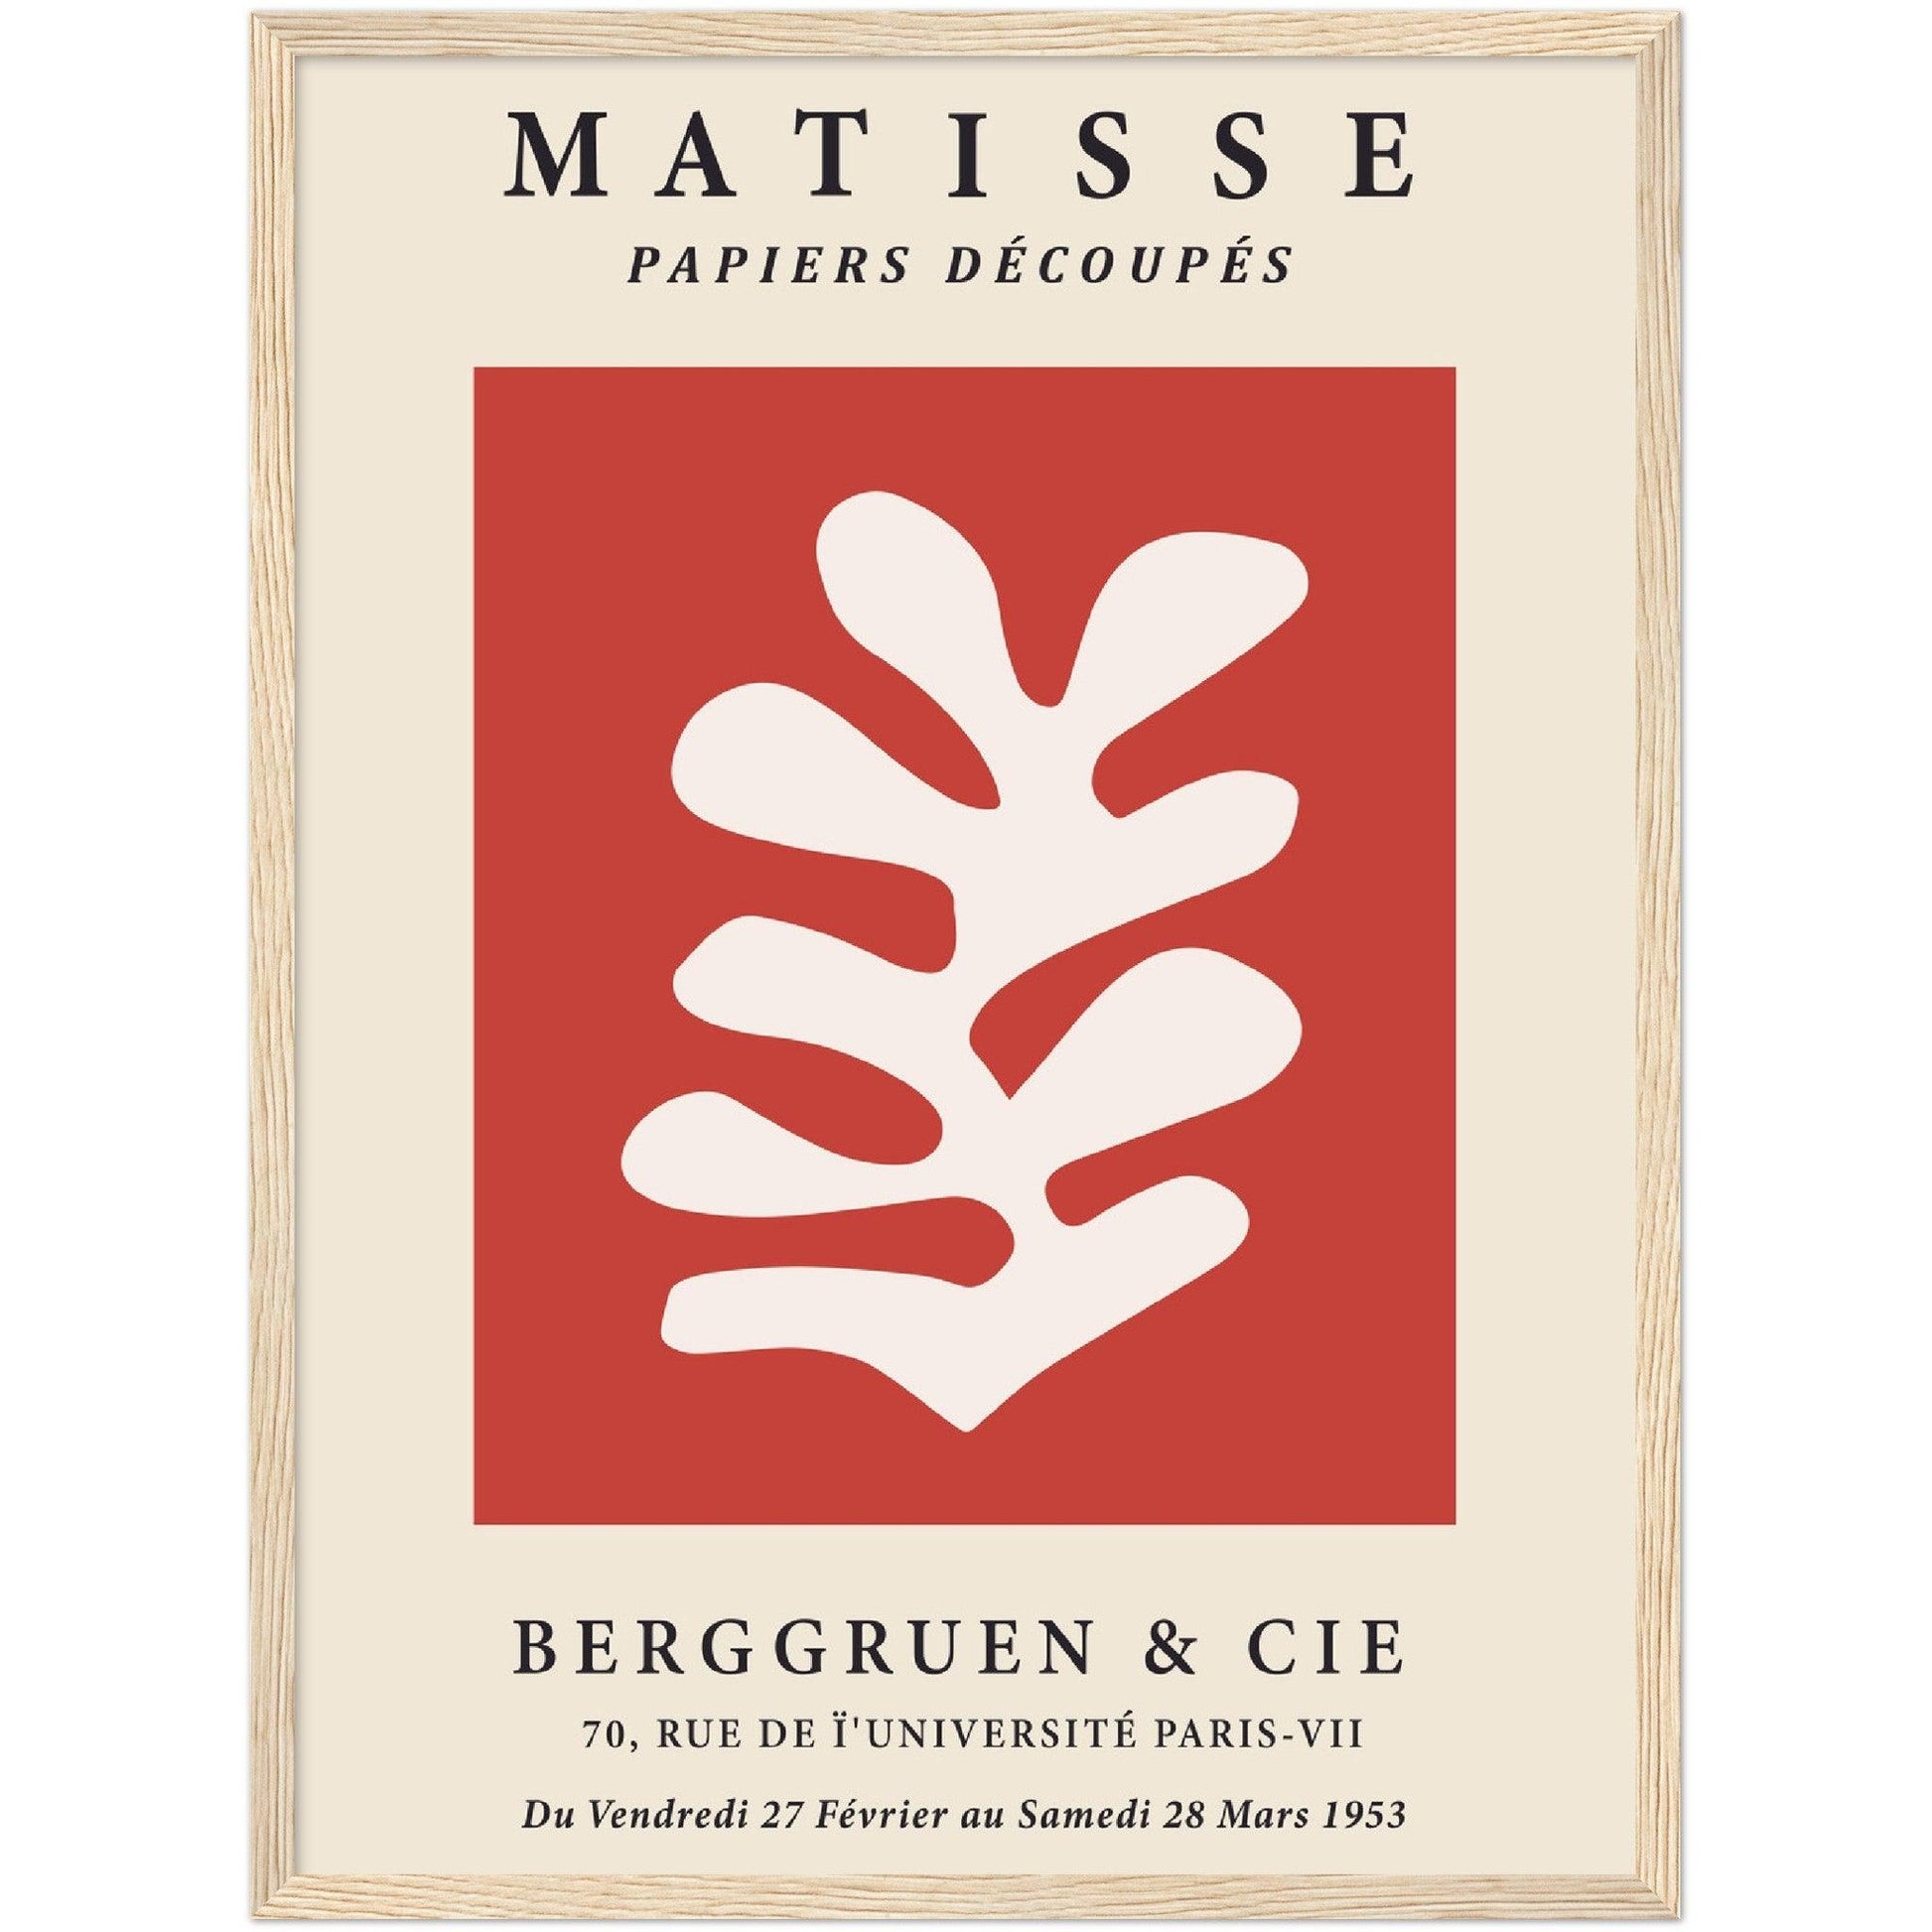 Matisse Exibition V-II - PAPIERS DÉCOUPÉS - Masters in Art